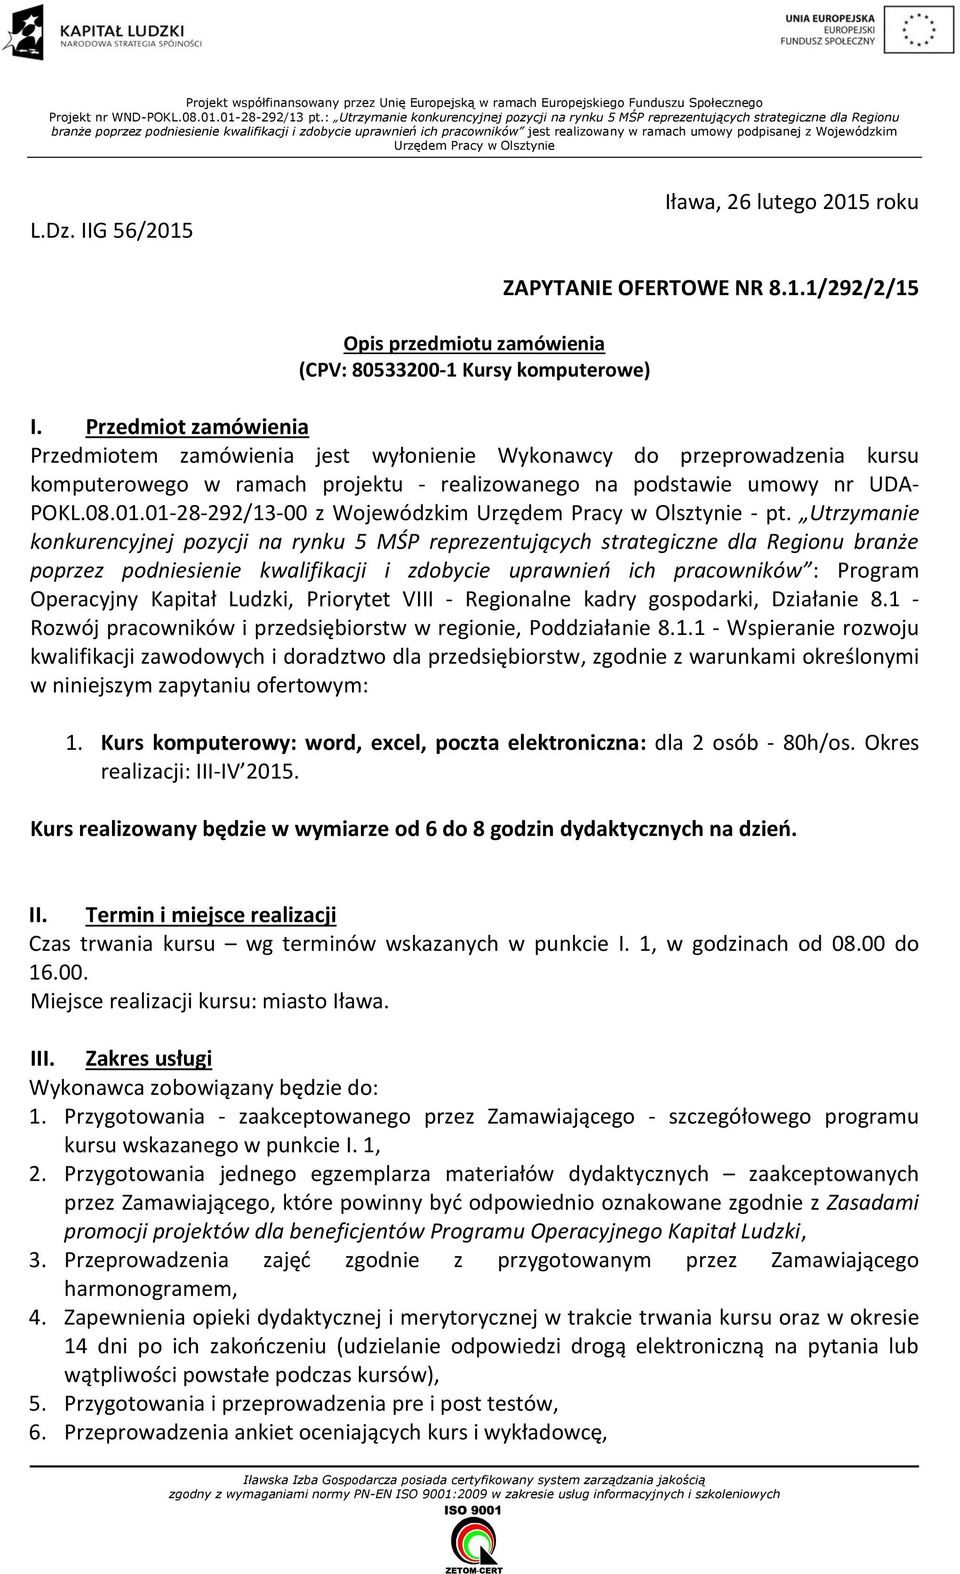 umowy podpisanej z Wojewódzkim Urzędem Pracy w Olsztynie L.Dz. IIG 56/2015 Iława, 26 lutego 2015 roku Opis przedmiotu zamówienia (CPV: 80533200-1 Kursy komputerowe) ZAPYTANIE OFERTOWE NR 8.1.1/292/2/15 I.